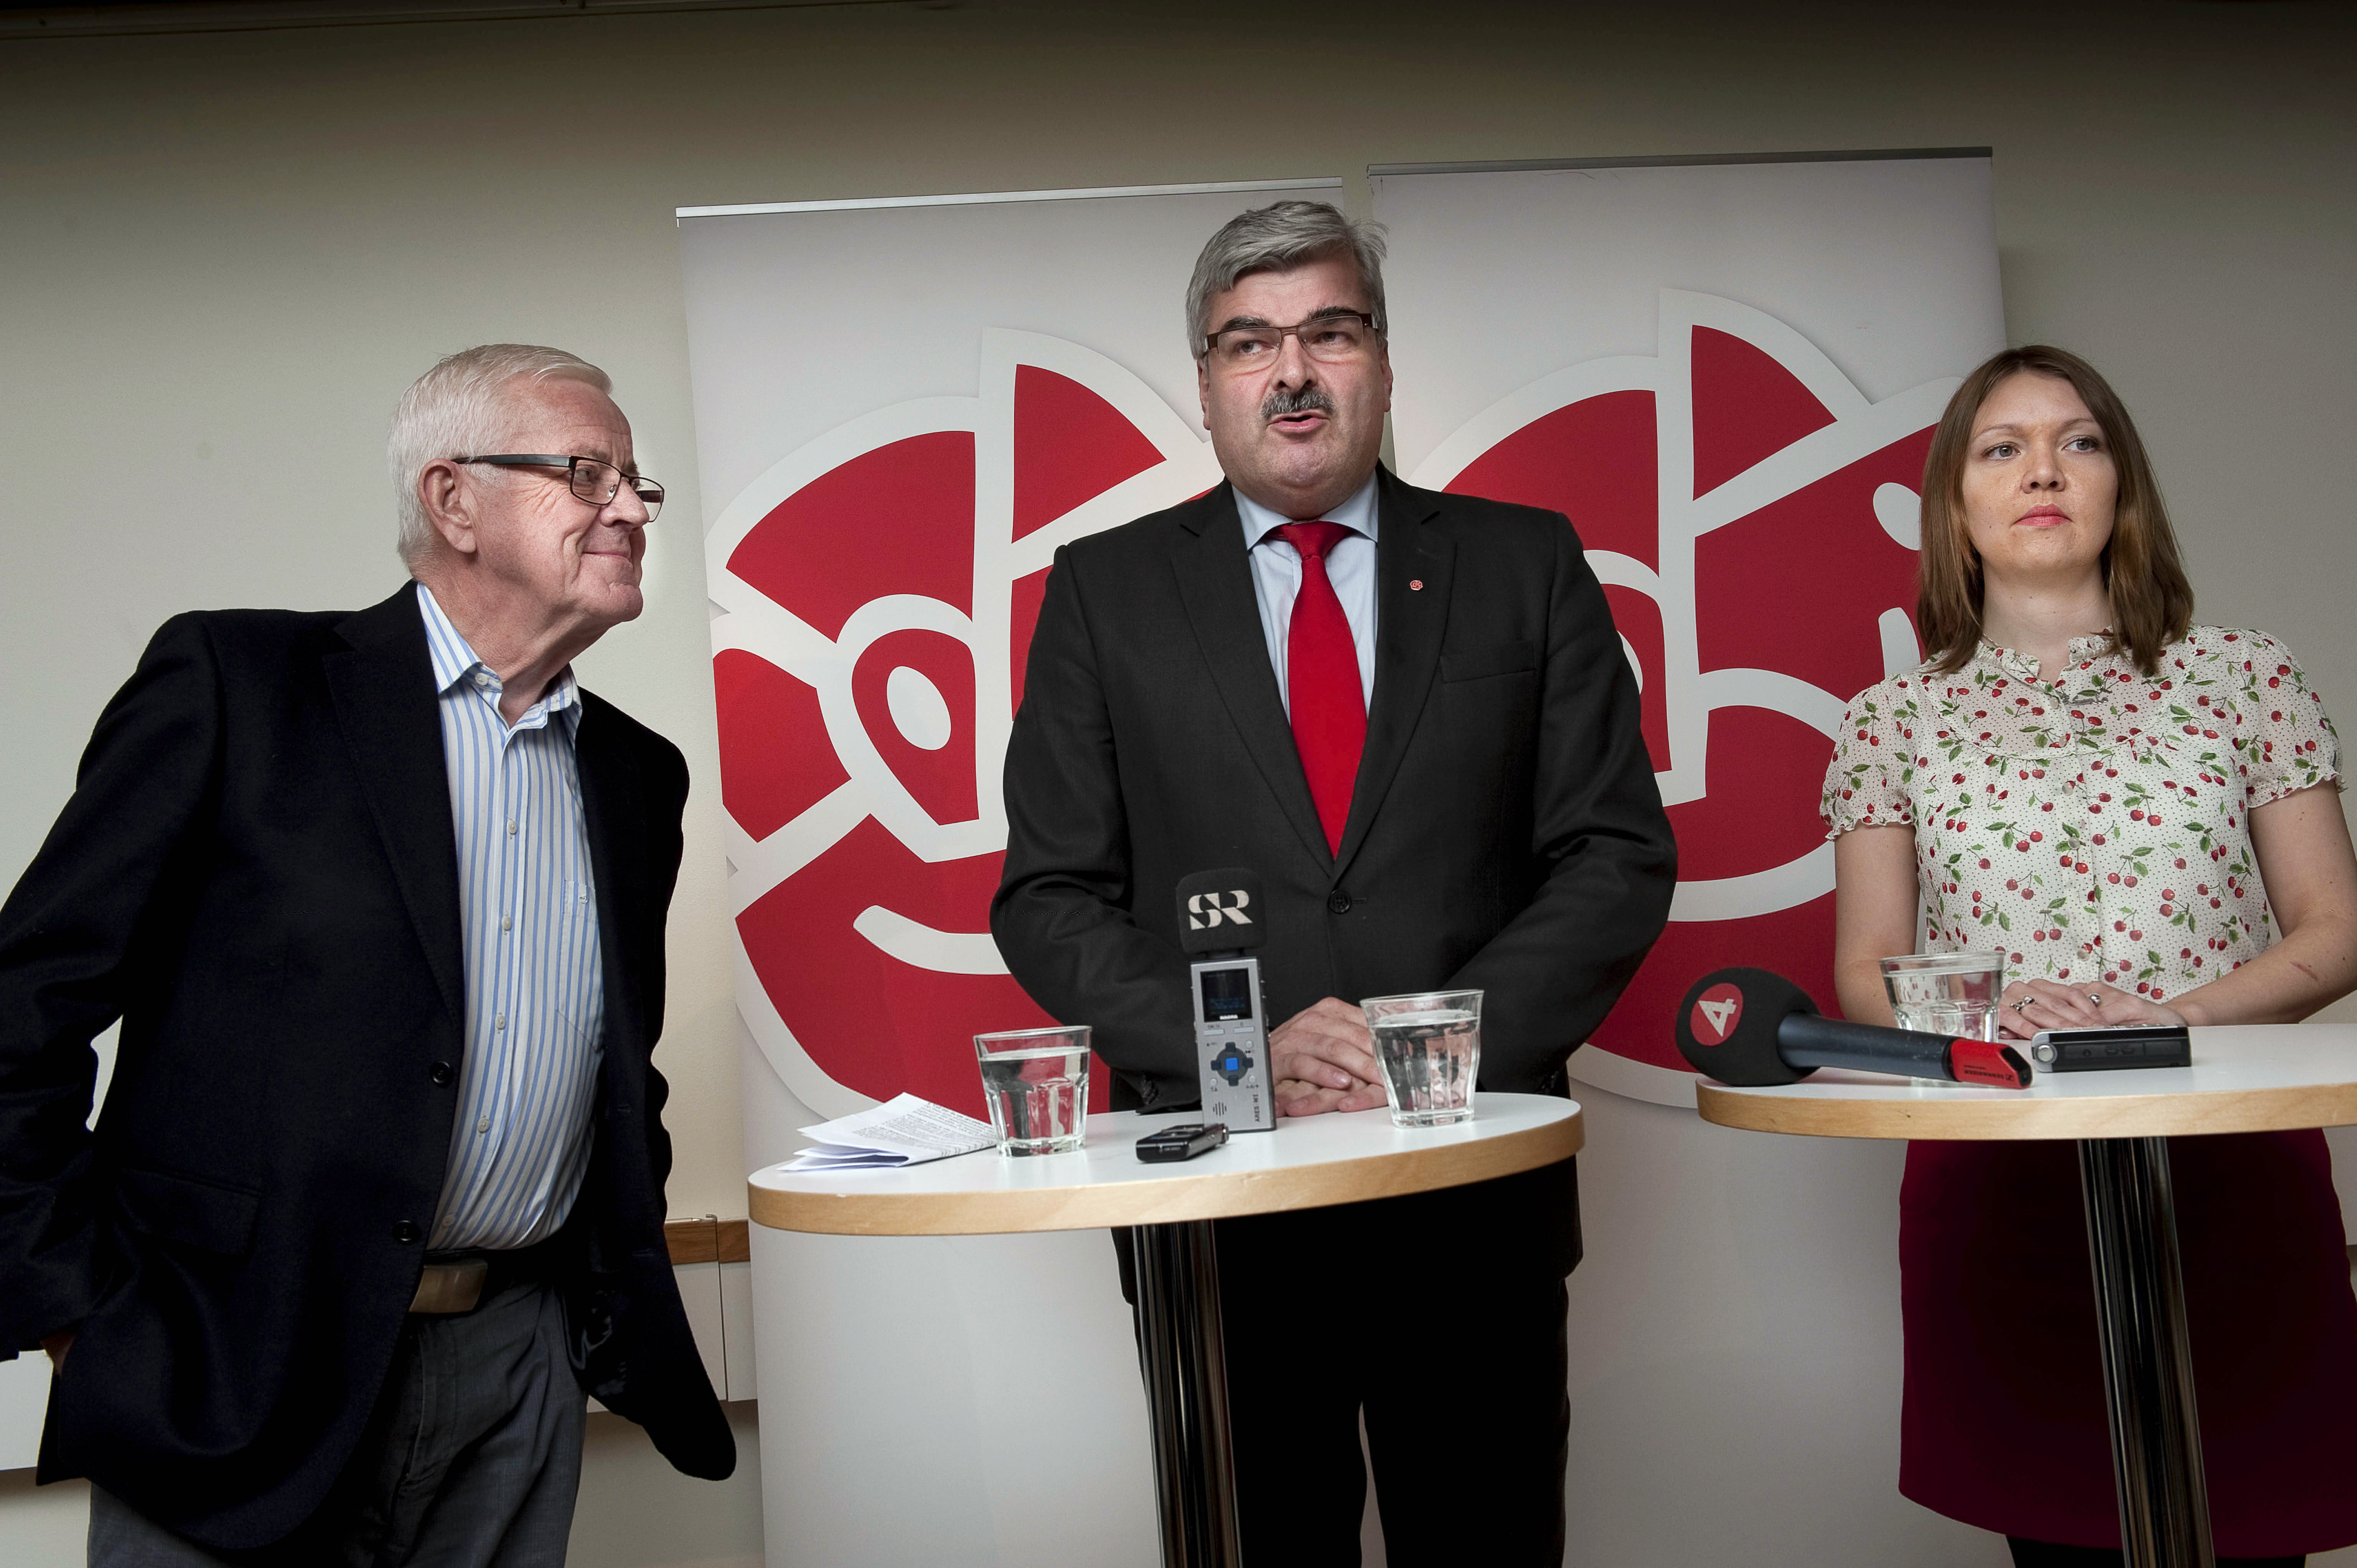 Håkan Juholt presenterade Engqvist och Lindgren Åsbrink under torsdagens presskonferens.